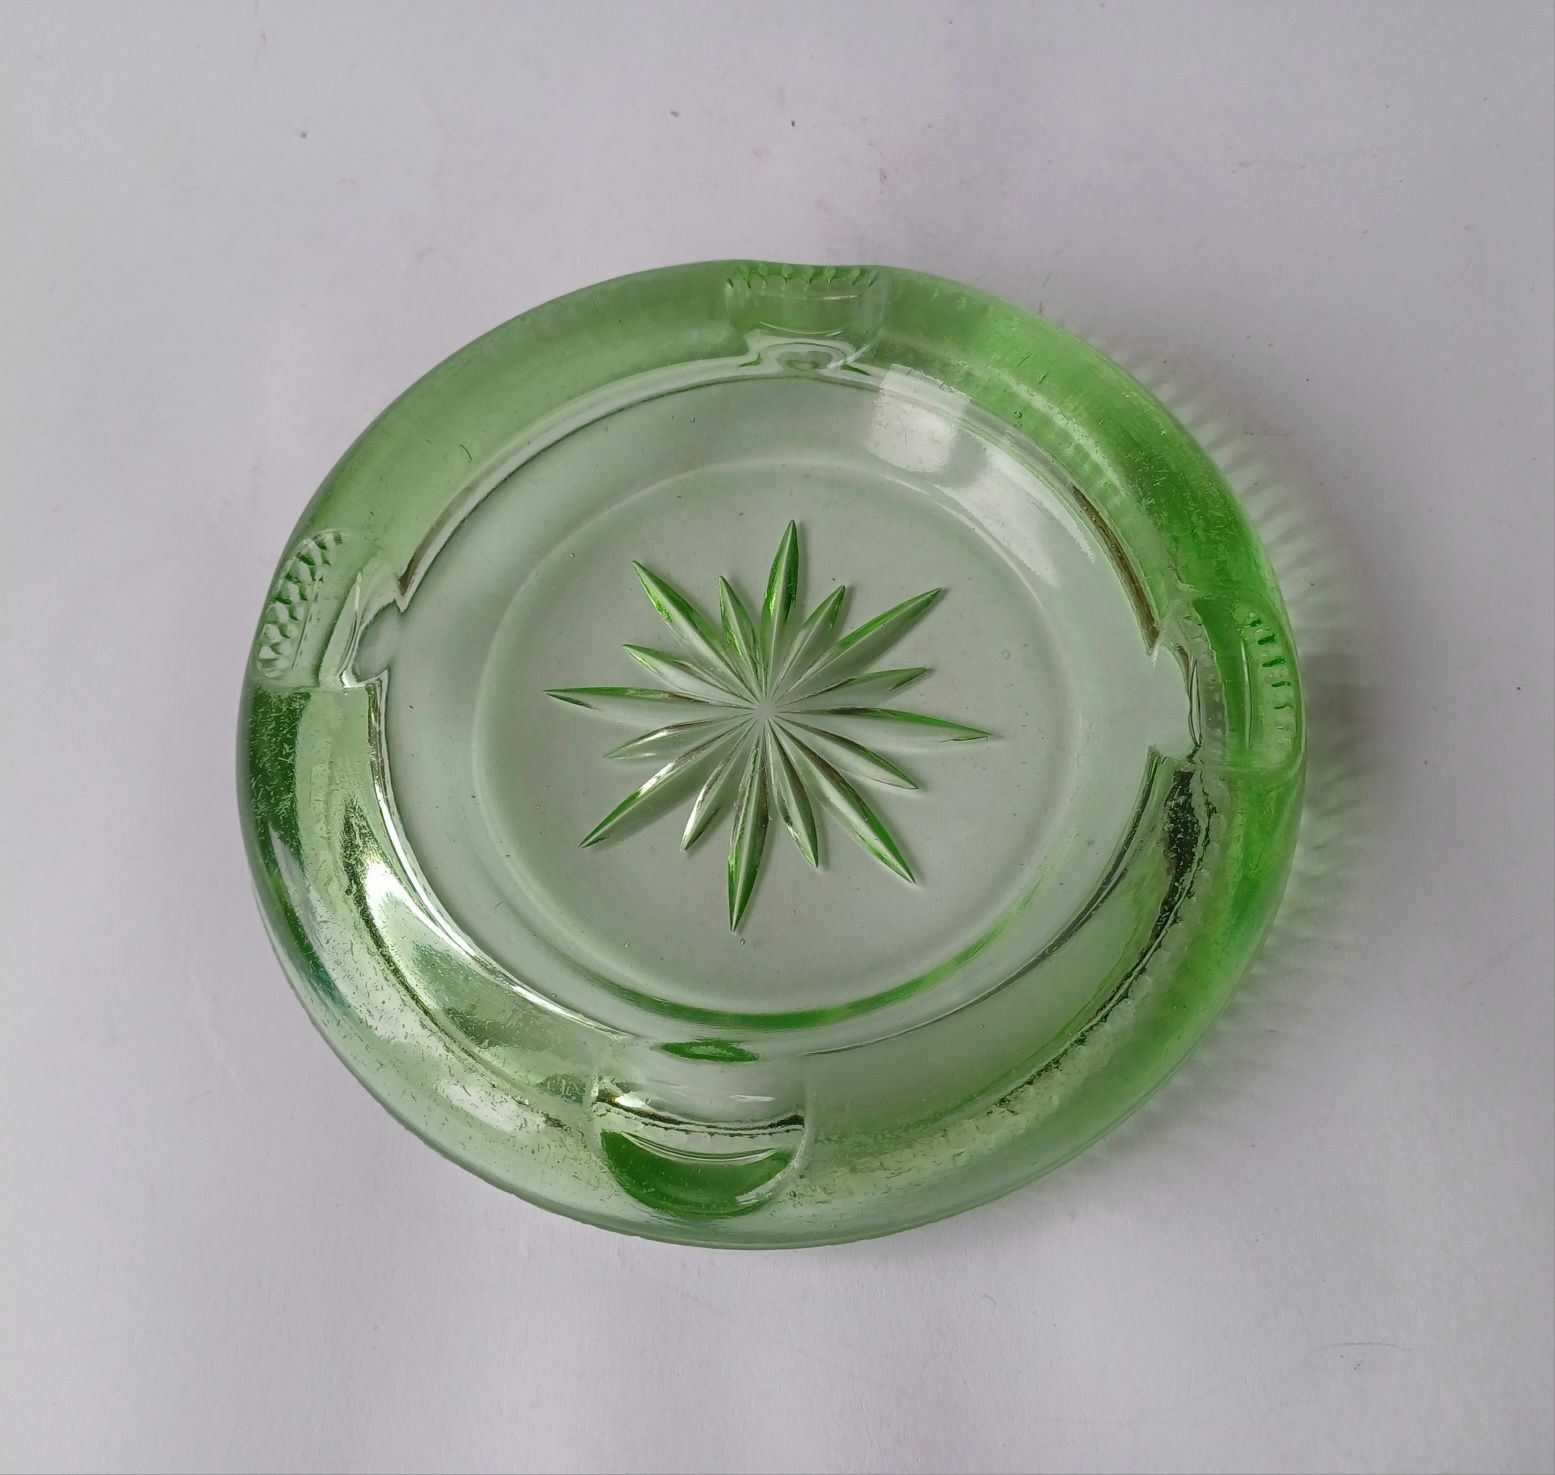 Szklana popielnica - zielone szkło prasowane  - antyk